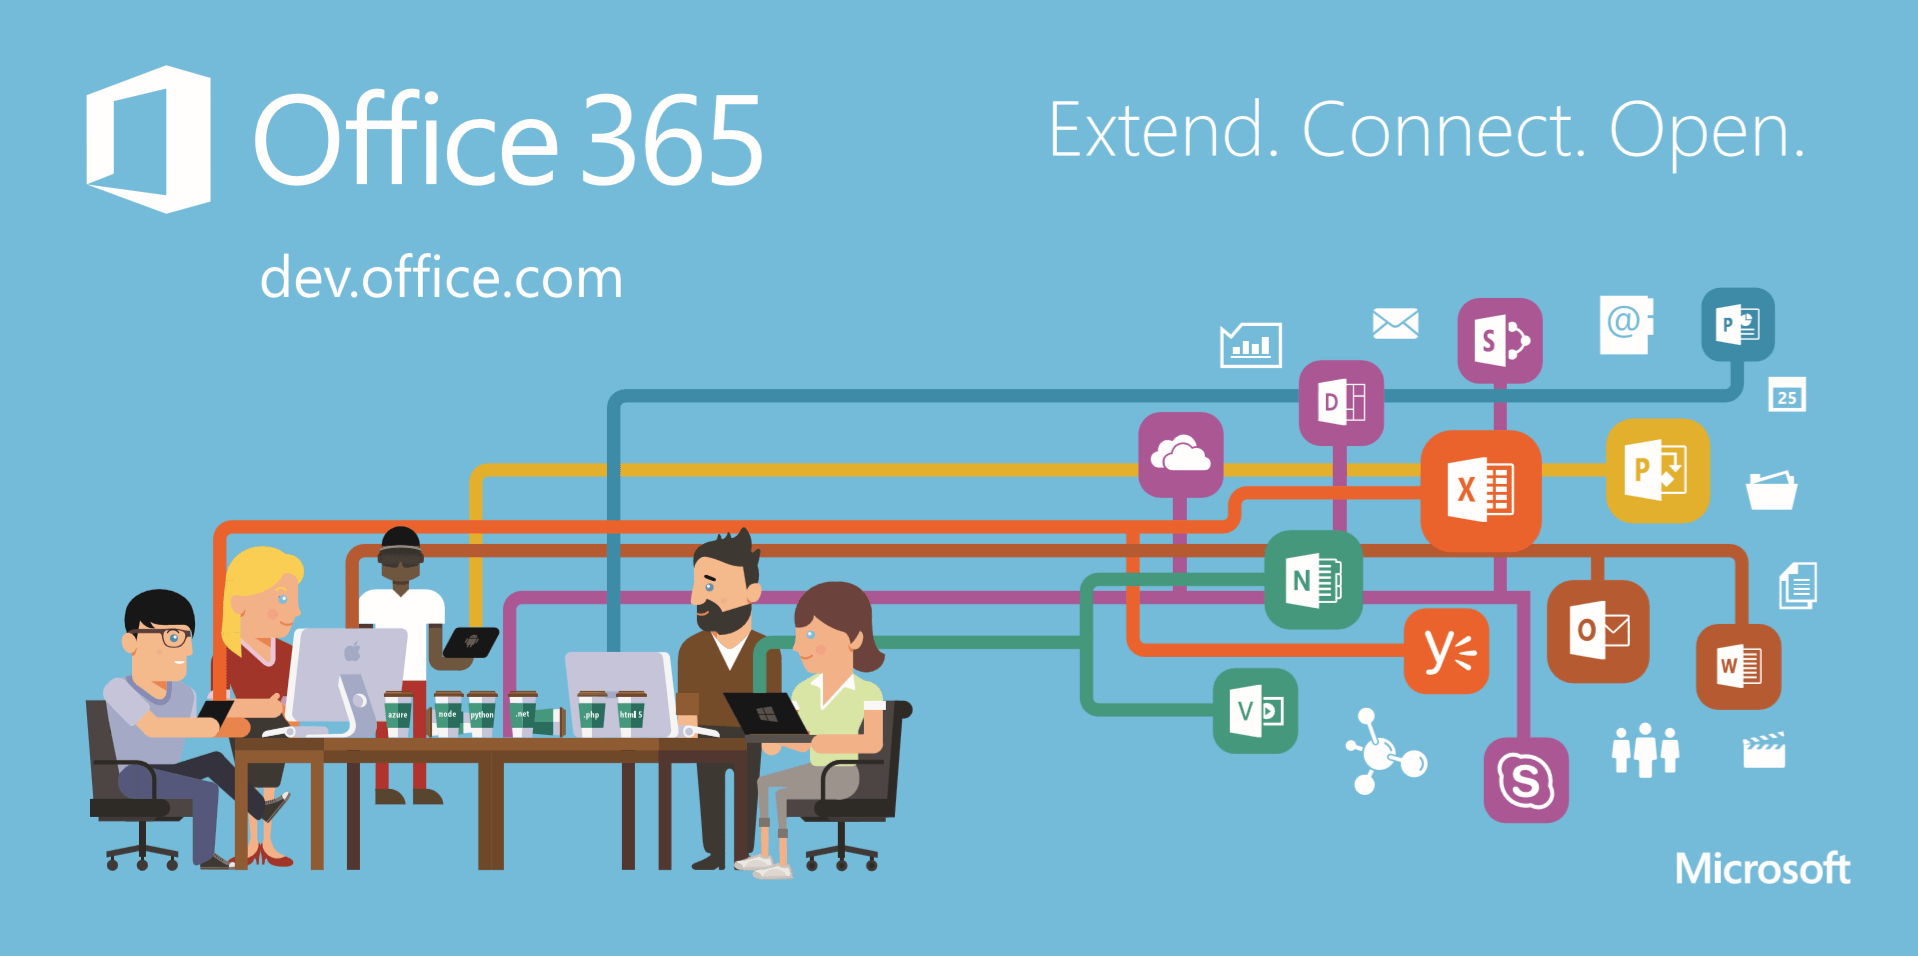 Office 365: Qué es, para qué sirve y qué ventajas tiene